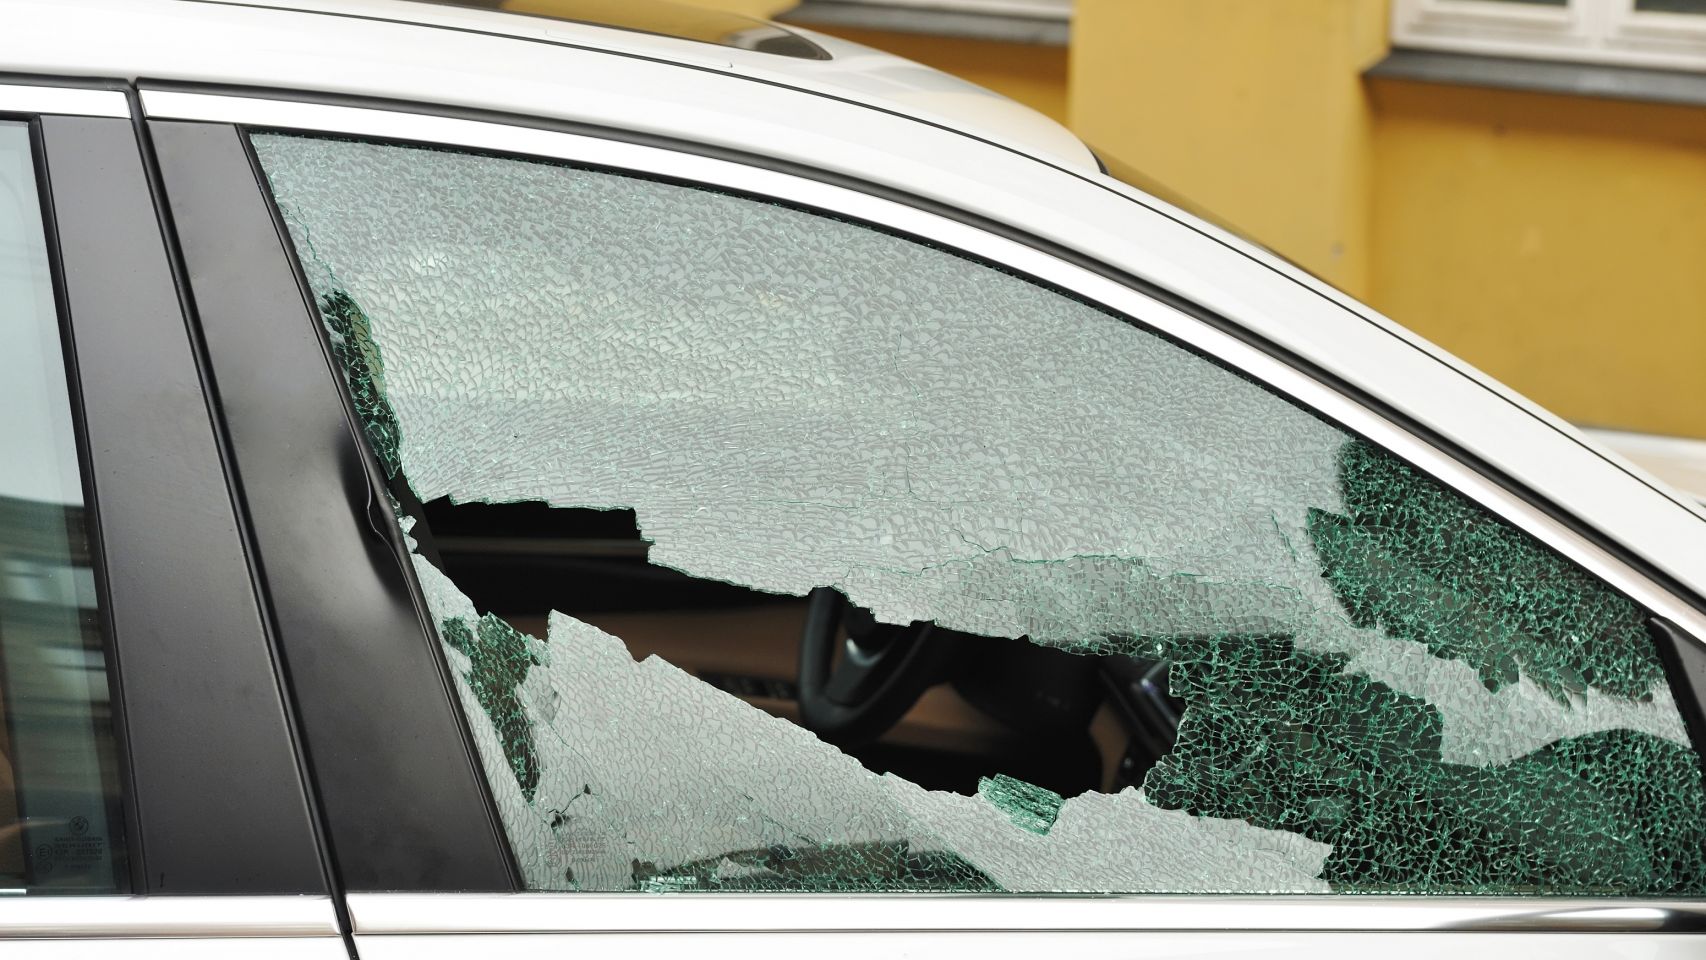 Разбиты окна машин. Разбить окно автомобиля. Разбитое стекло авто. Разбитые стекла в машине. Разбитое окно машины.